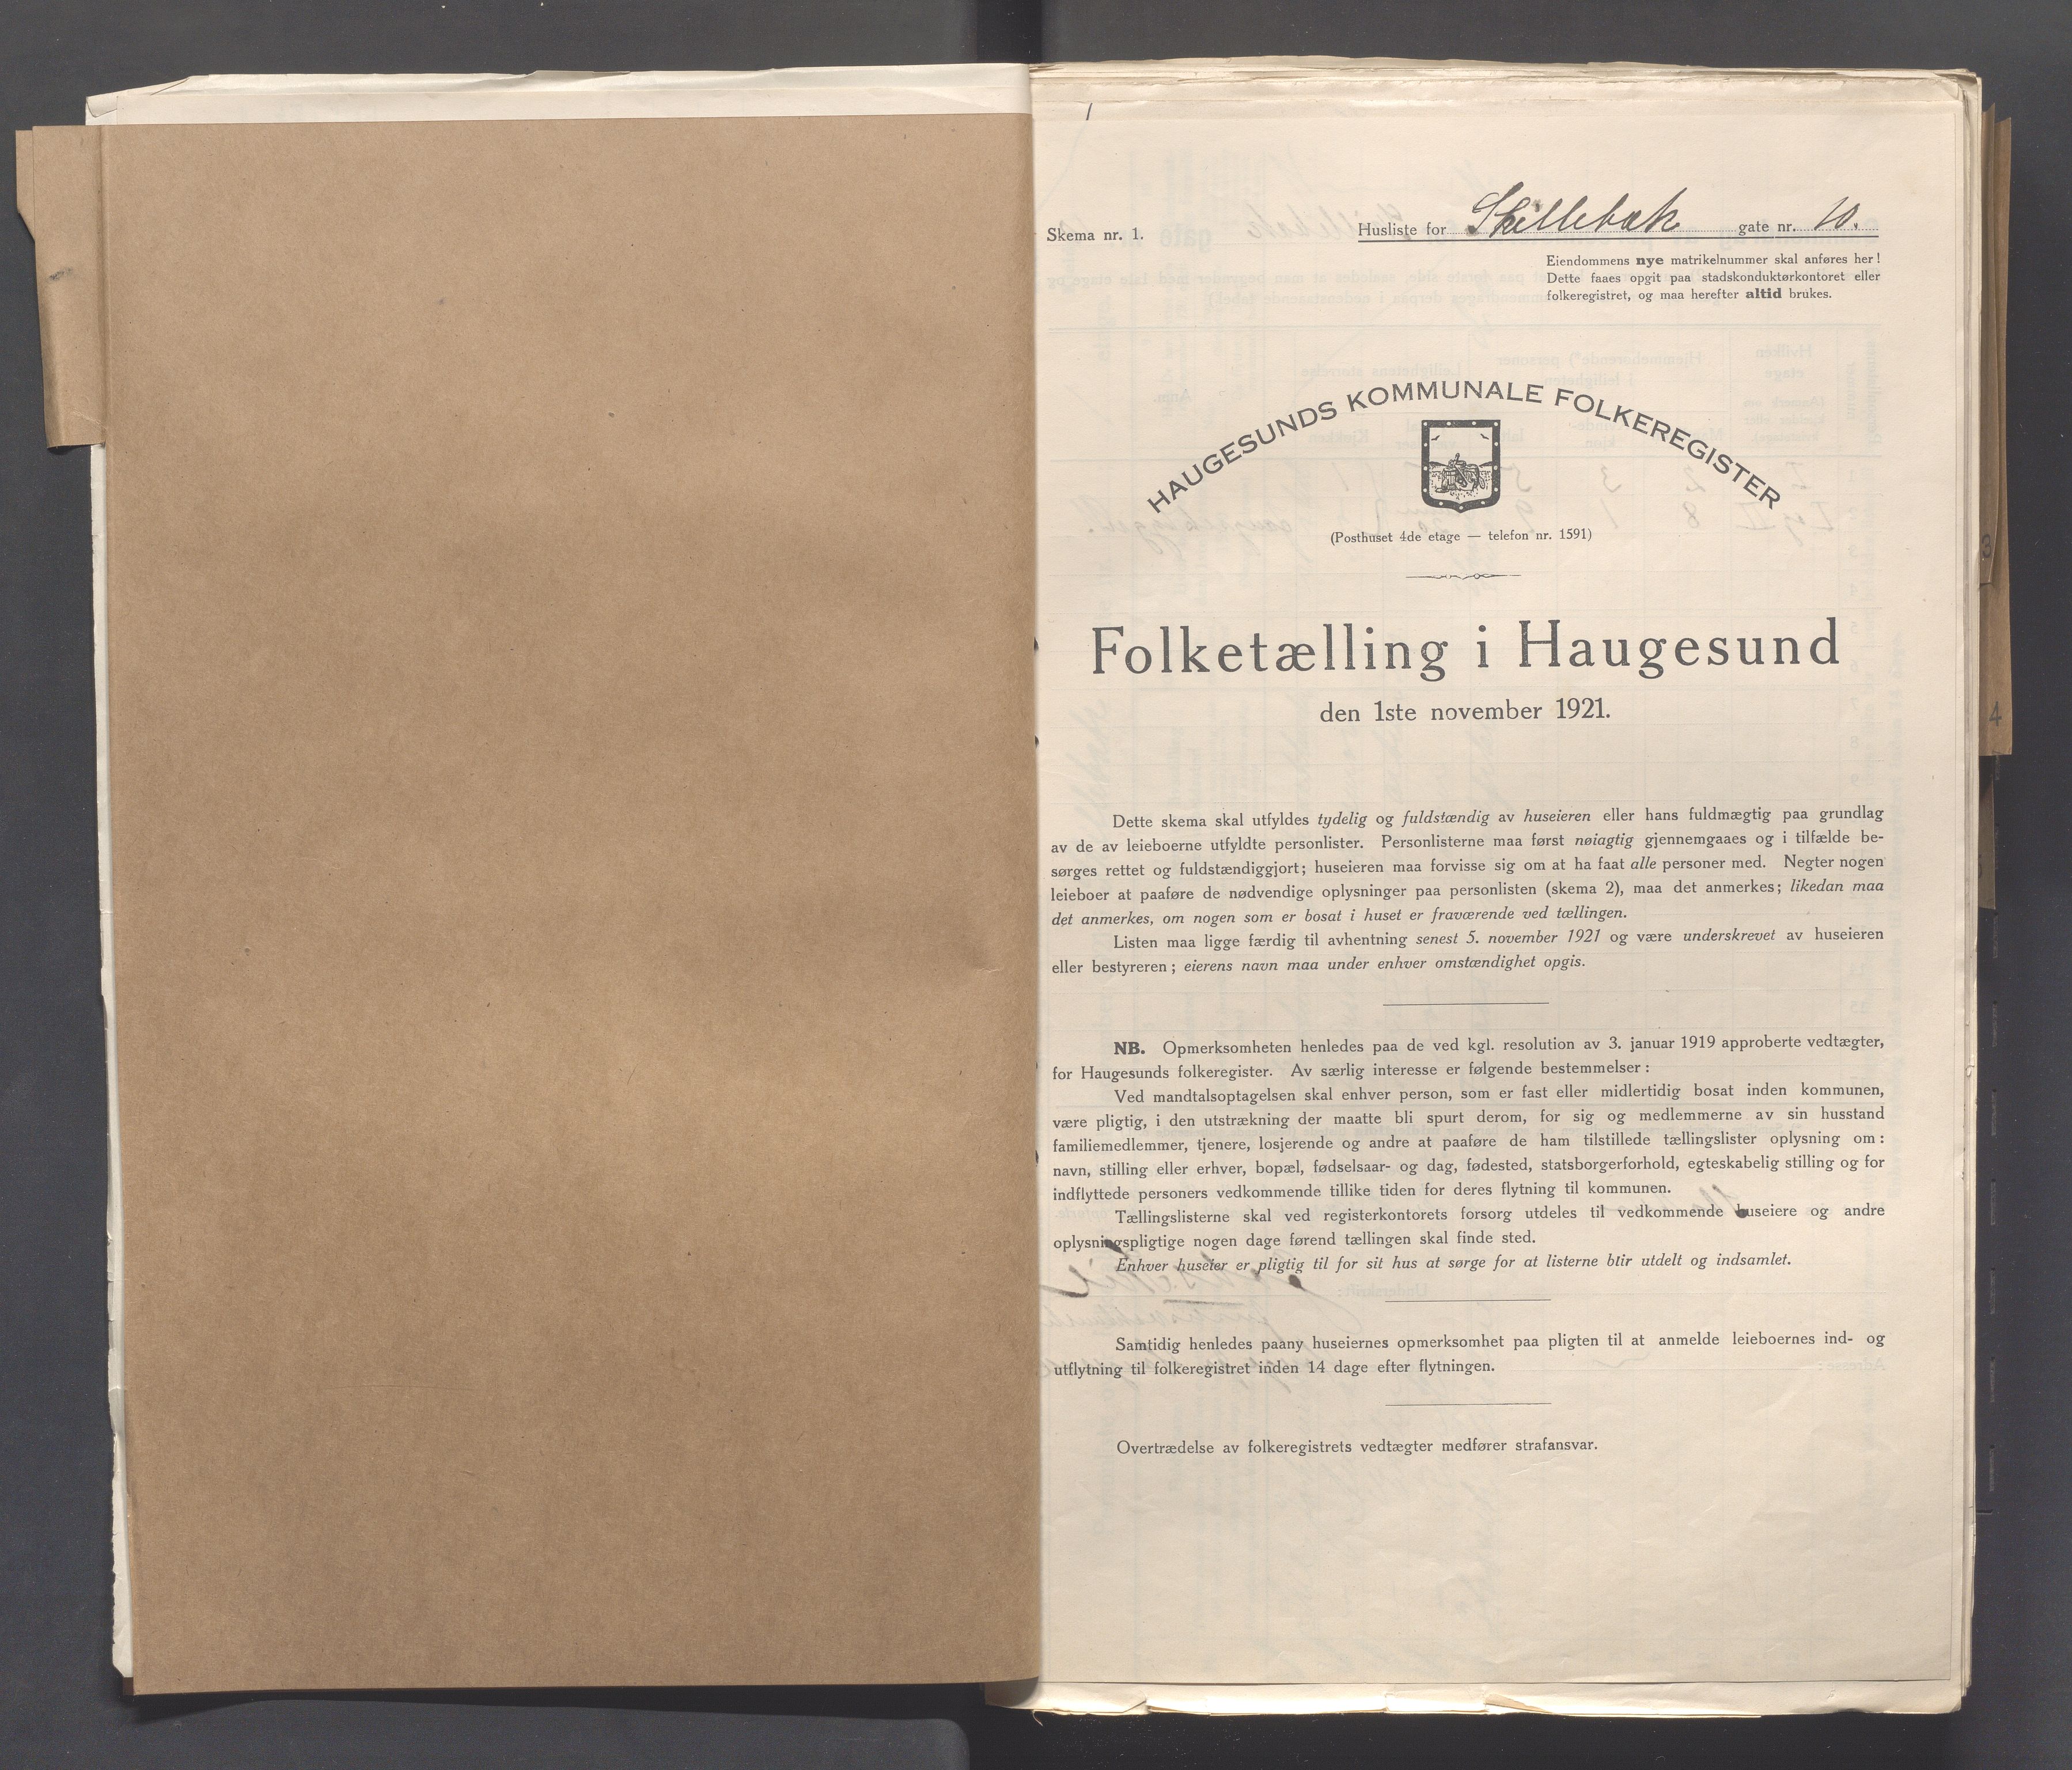 IKAR, Local census 1.11.1921 for Haugesund, 1921, p. 3904